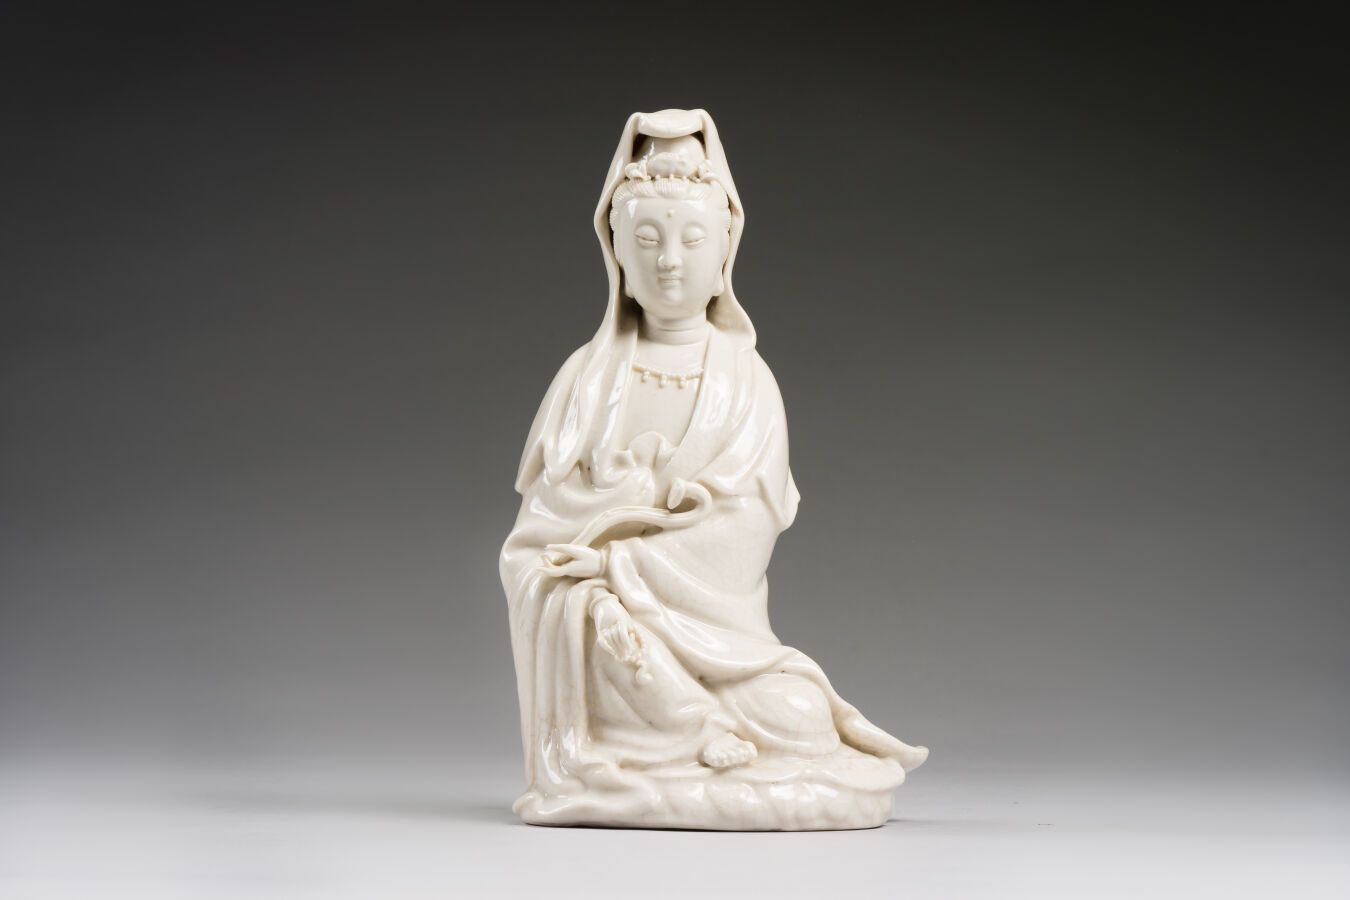 Null CHINA
Estatuilla china de porcelana blanca de guanyin, mostrada sentada, so&hellip;